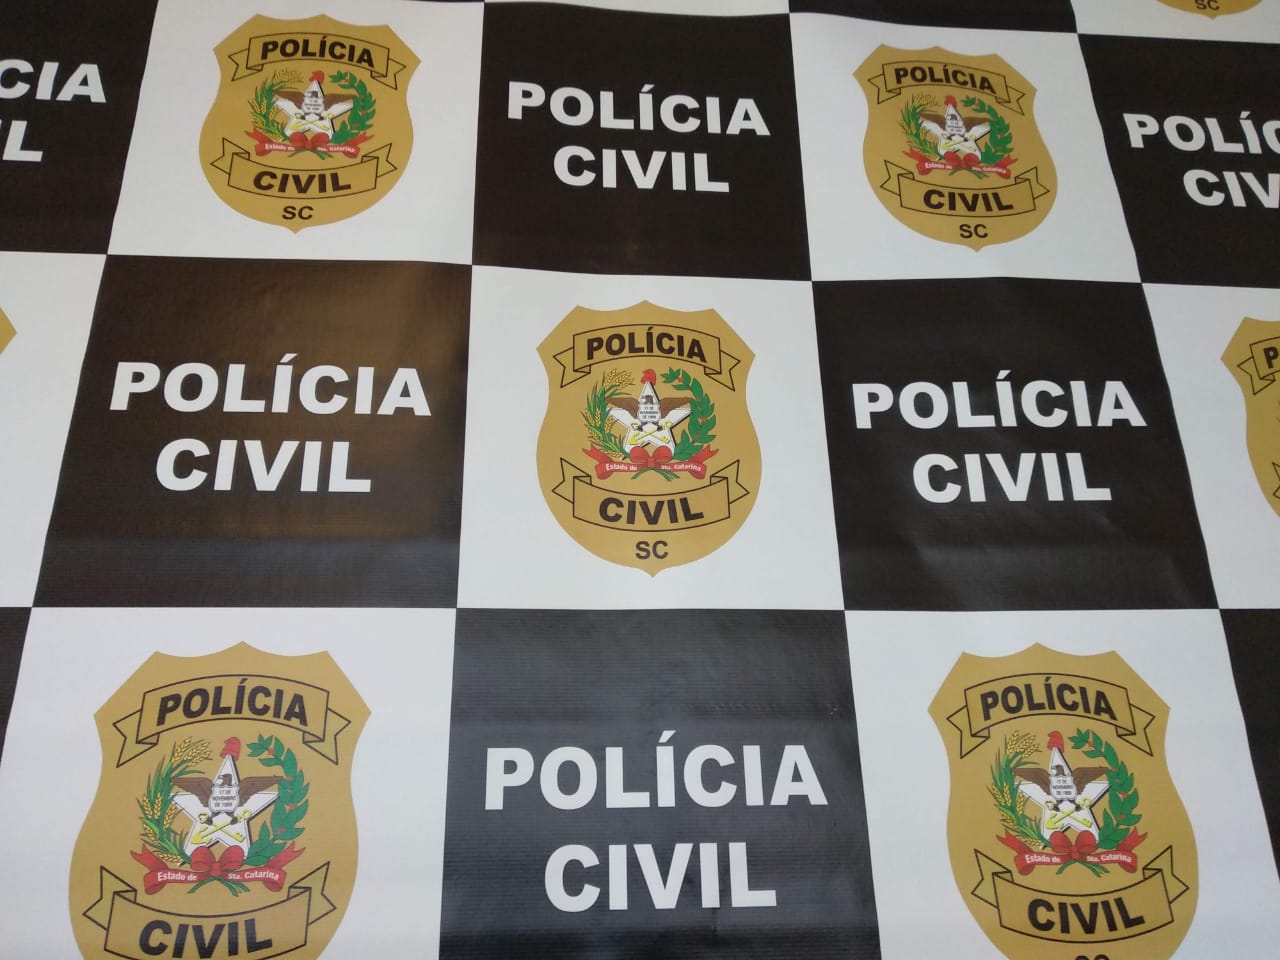 Foto: Polícia Civil / divulgação.